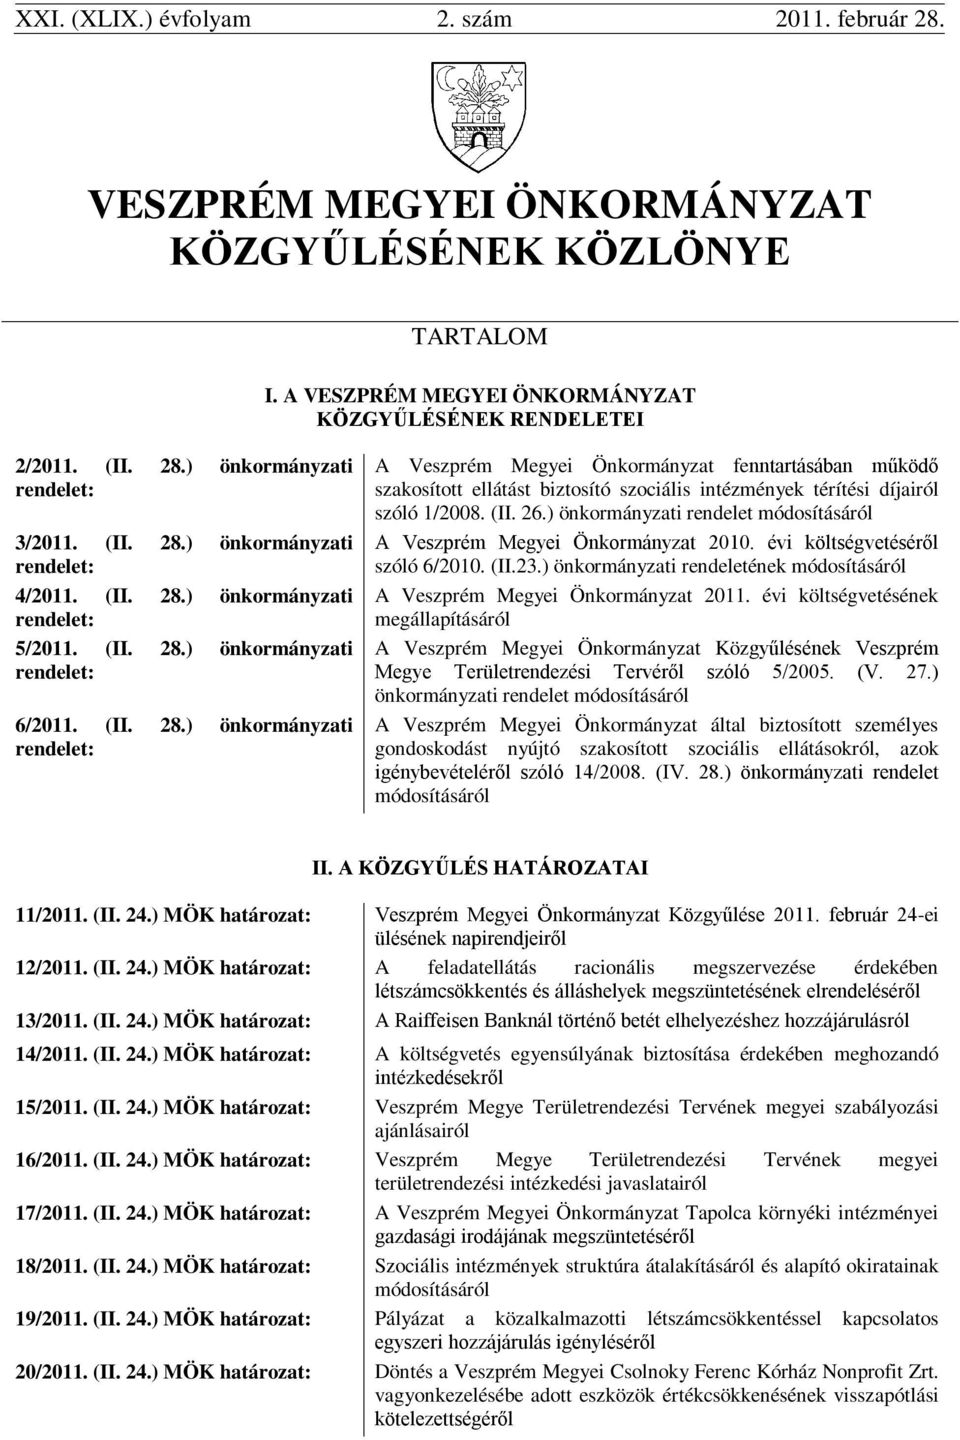 (II. 26.) önkormányzati rendelet módosításáról A Veszprém Megyei Önkormányzat 2010. évi költségvetéséről szóló 6/2010. (II.23.